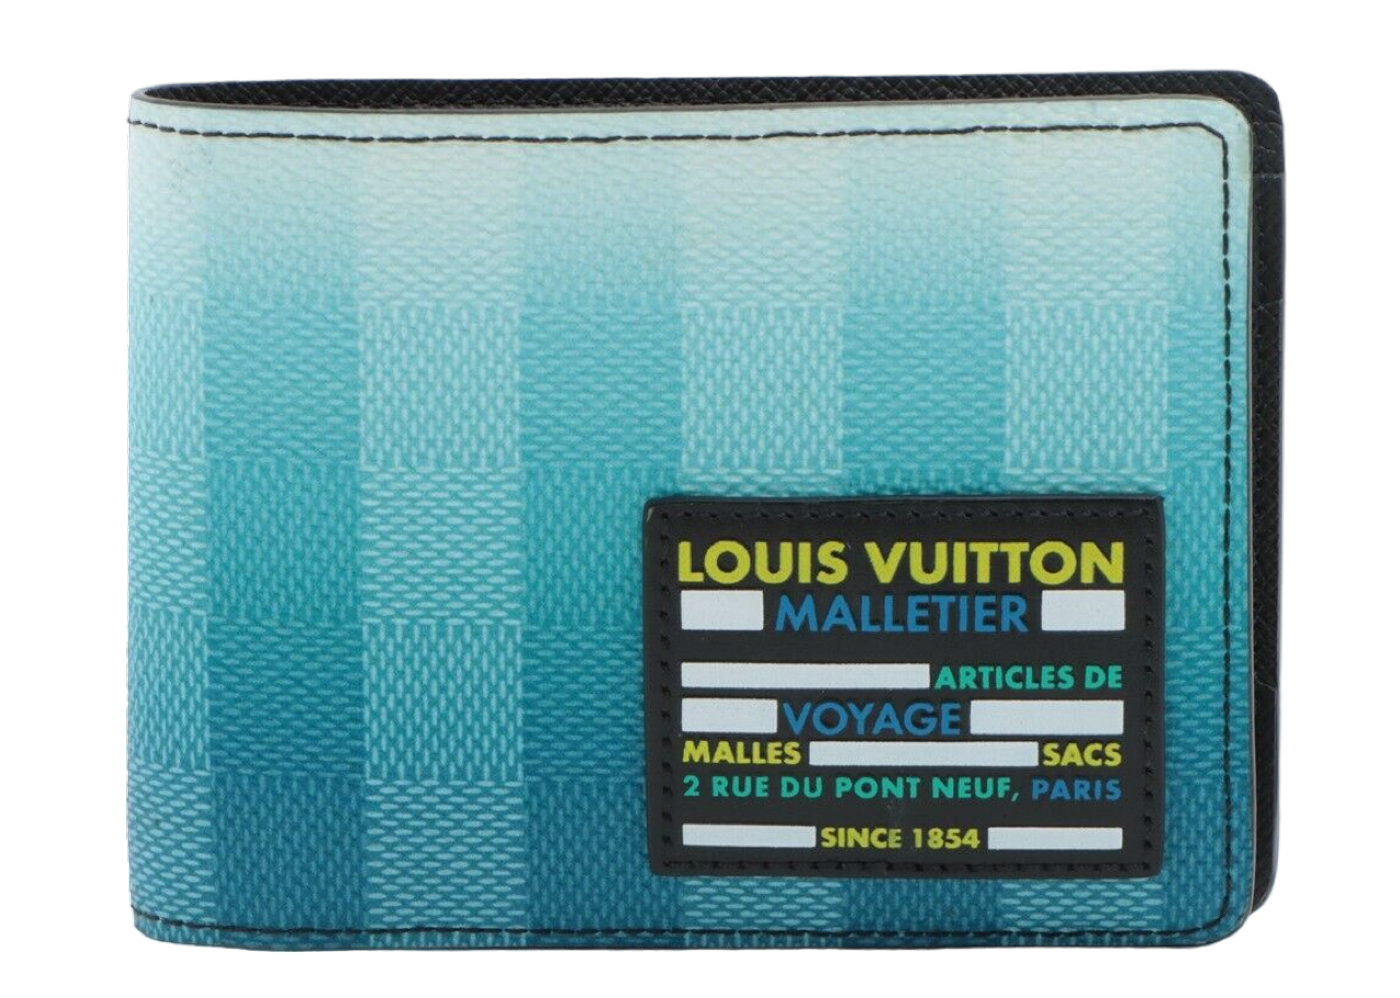 Louis Vuitton Multiple Wallet Damier Stripes Gradient Blue